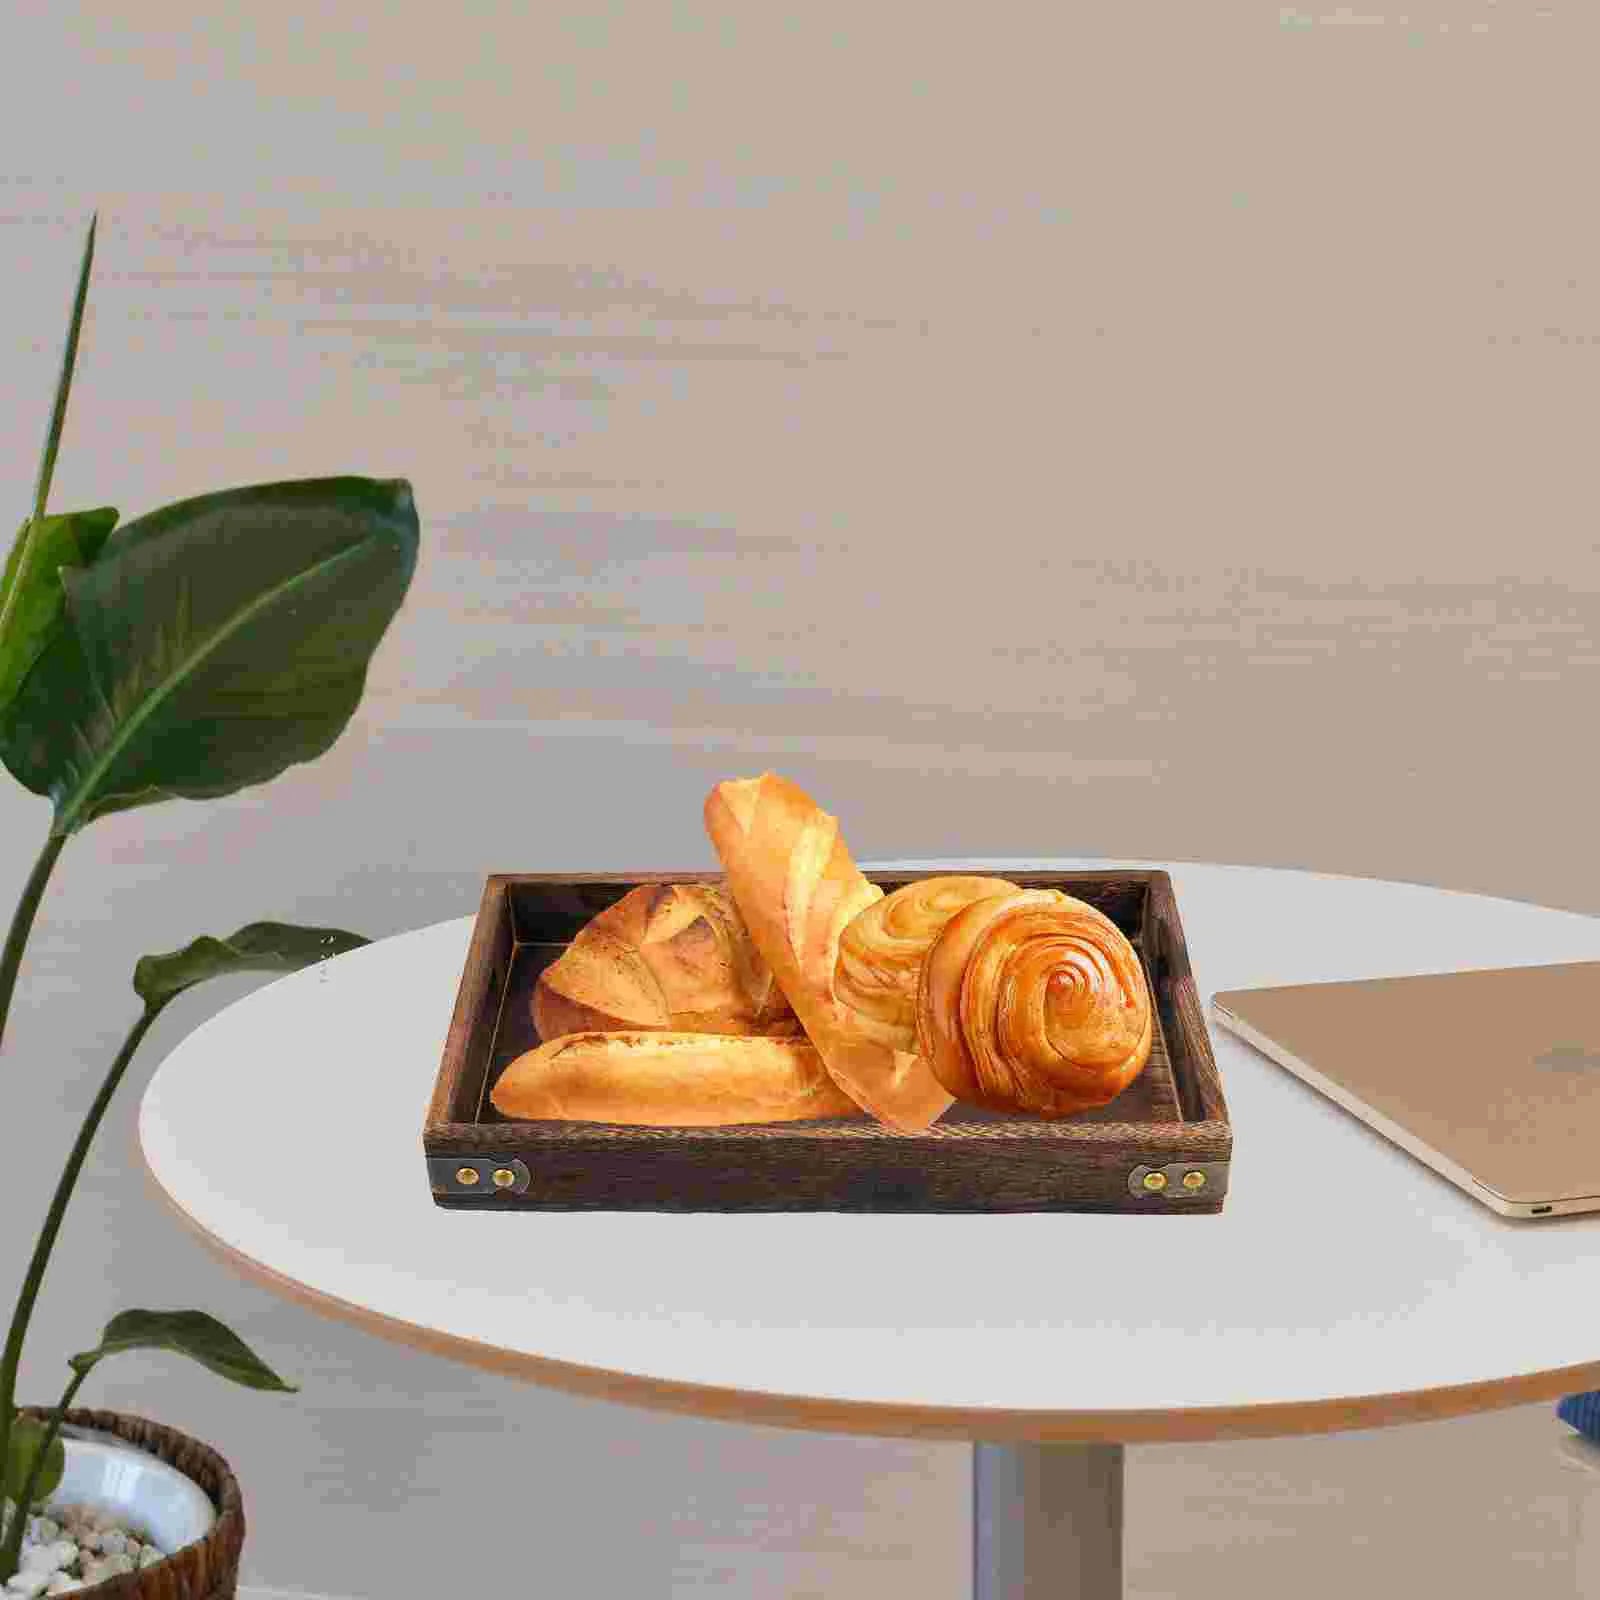 Bandeja de madeira bandeja de prato de prato de prato de chápela bandejas decorativas para café da manhã café café